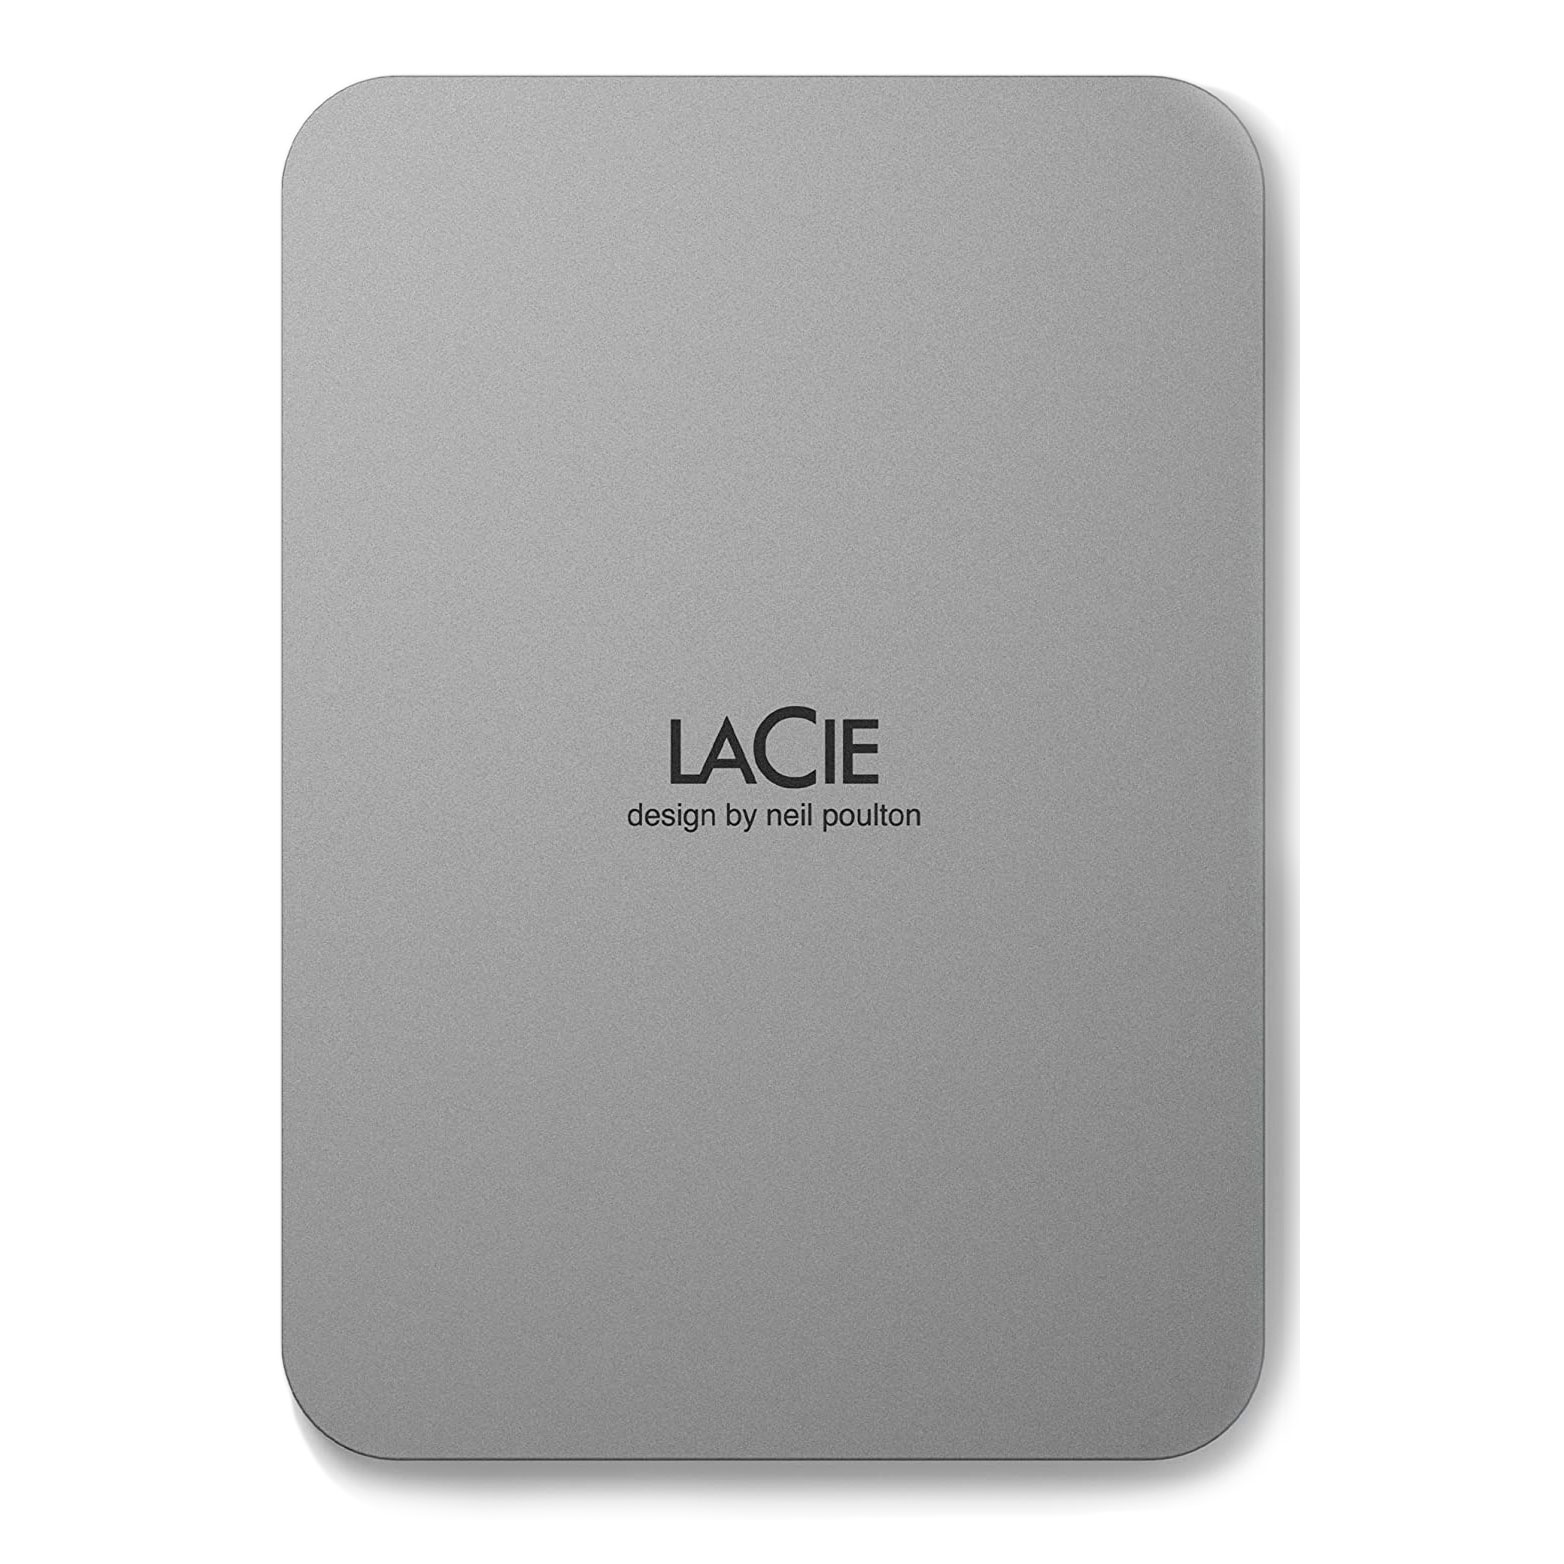 moneybunnies заработай накопи потрать правильно Внешний жесткий диск LaCie Mobile Drive, 2ТБ, серебристый